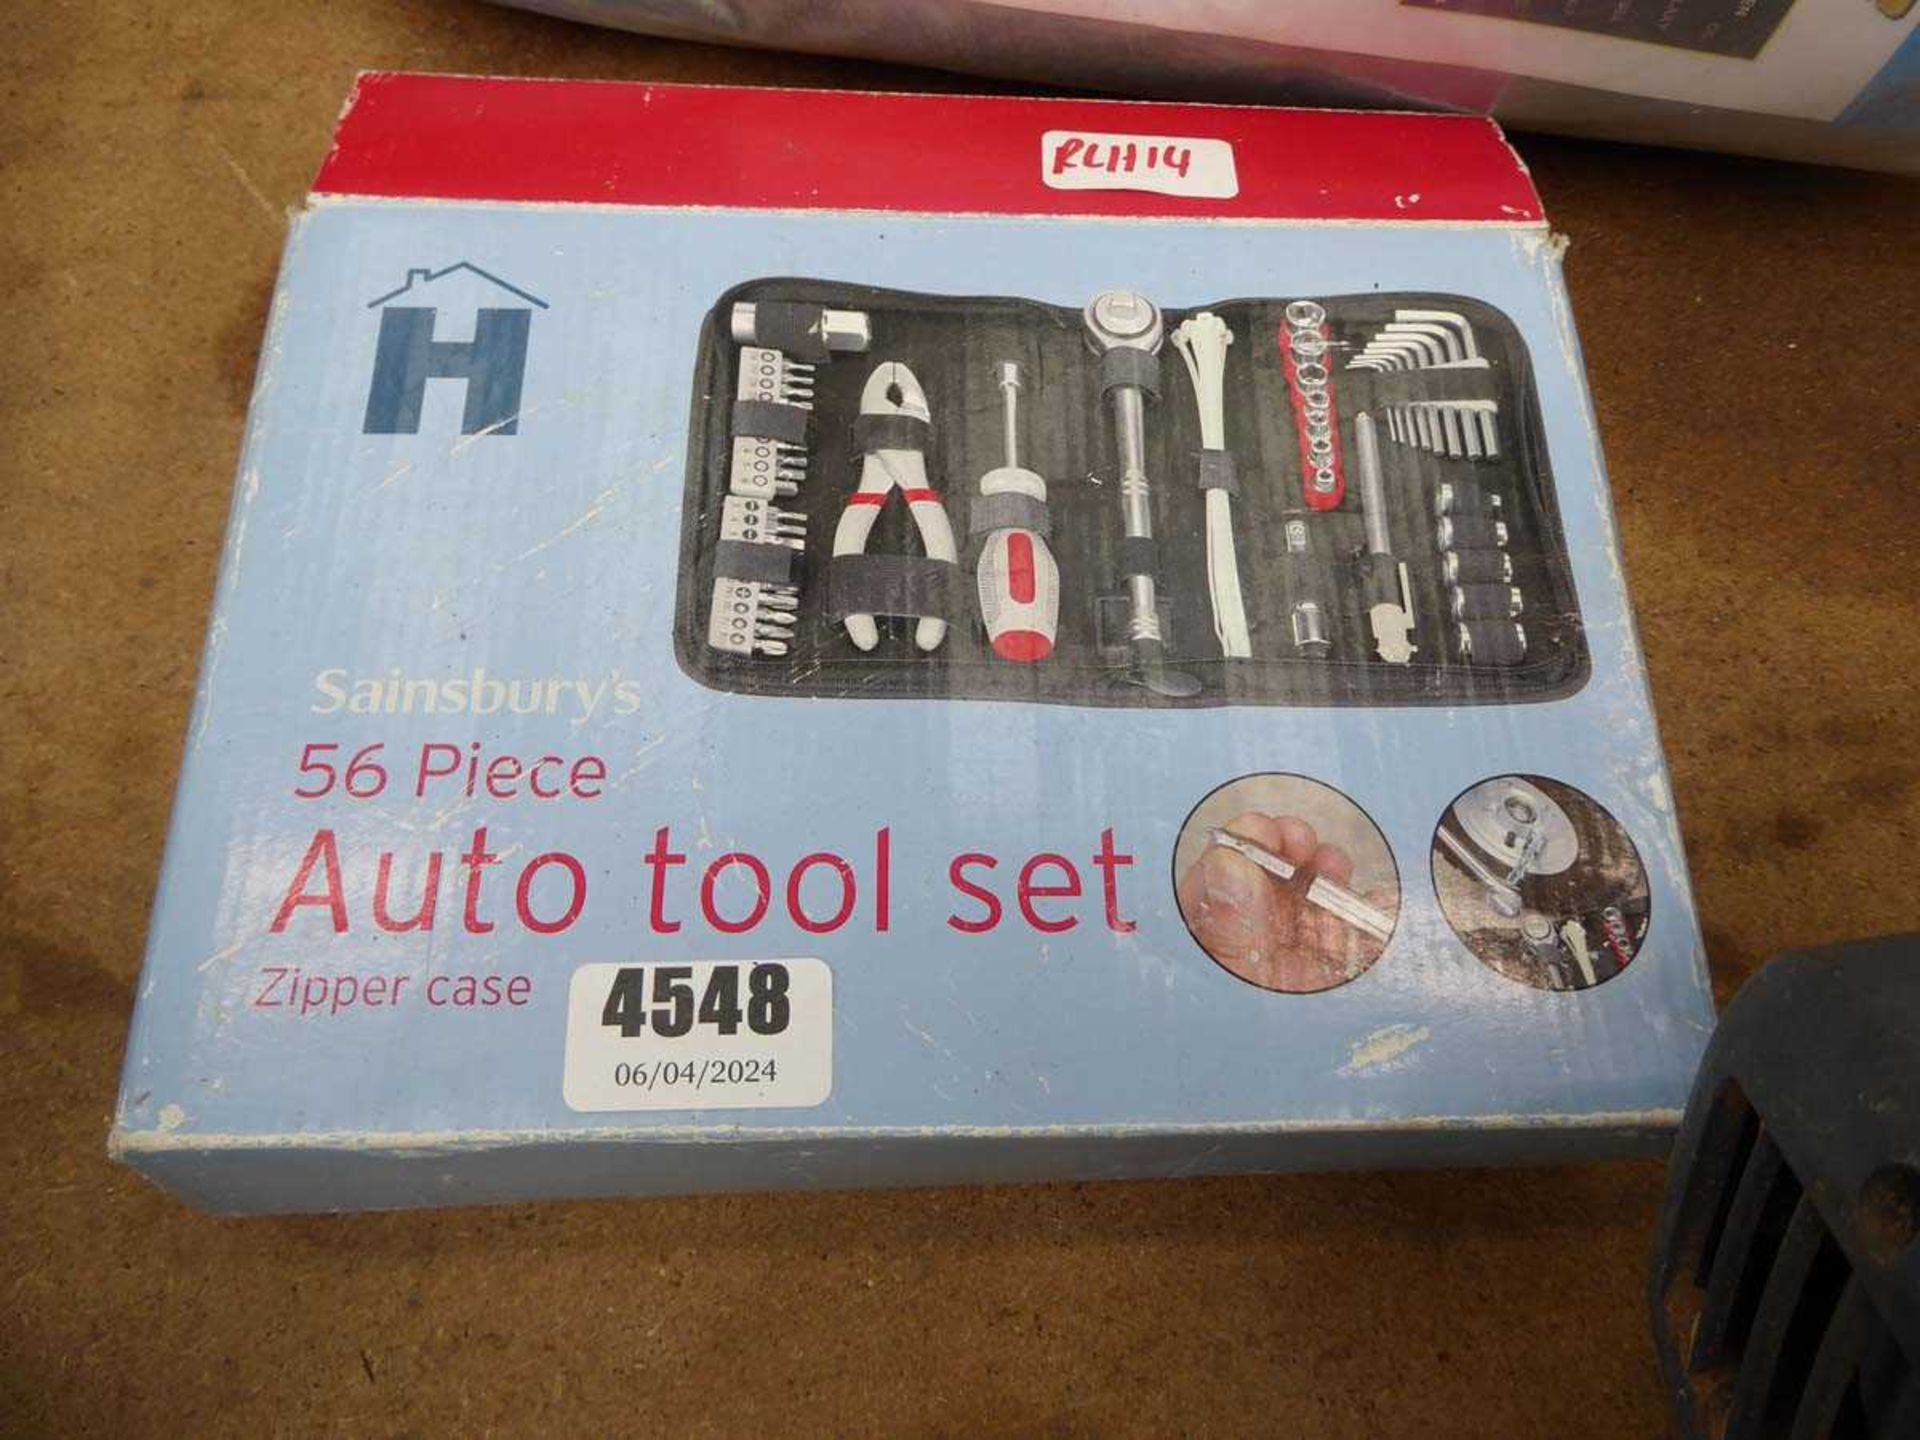 56 piece auto tool set